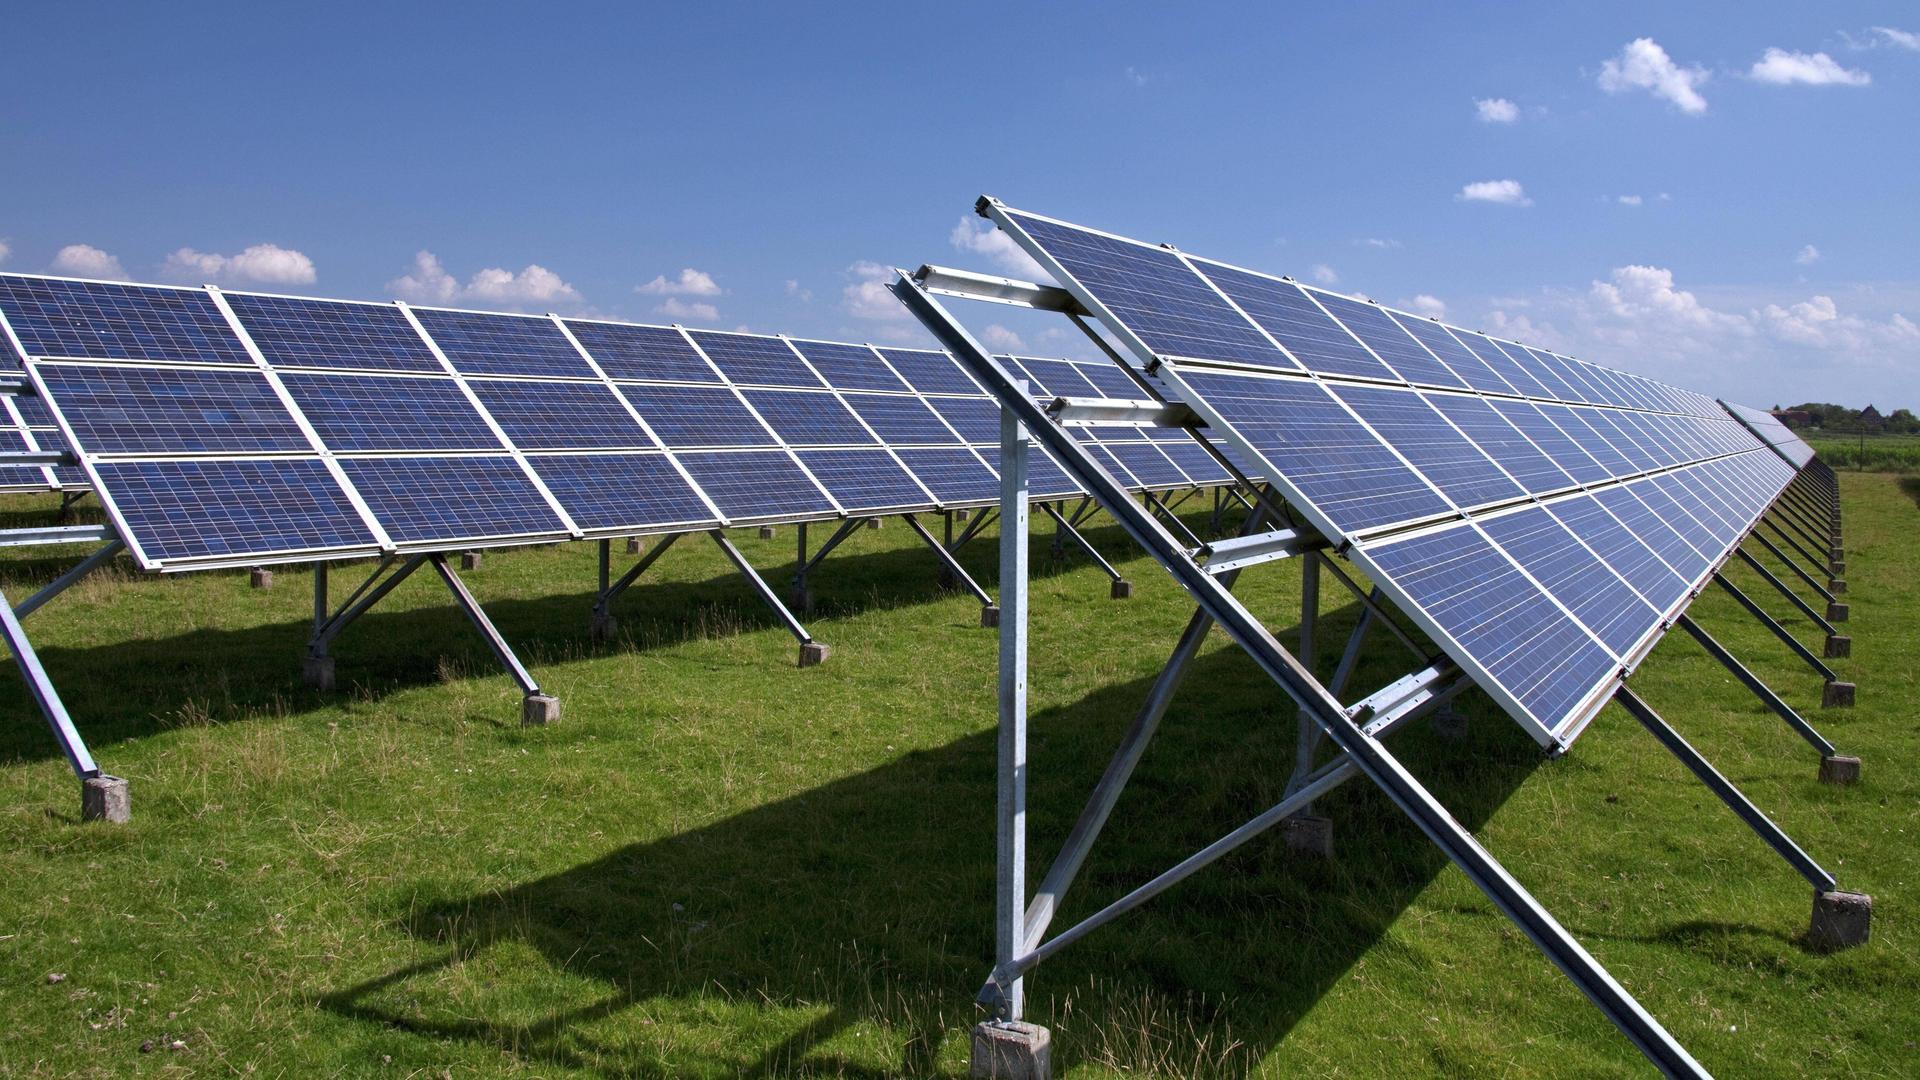 Photovoltaische Solarmodule zur Stromerzeugung auf einer Wiese